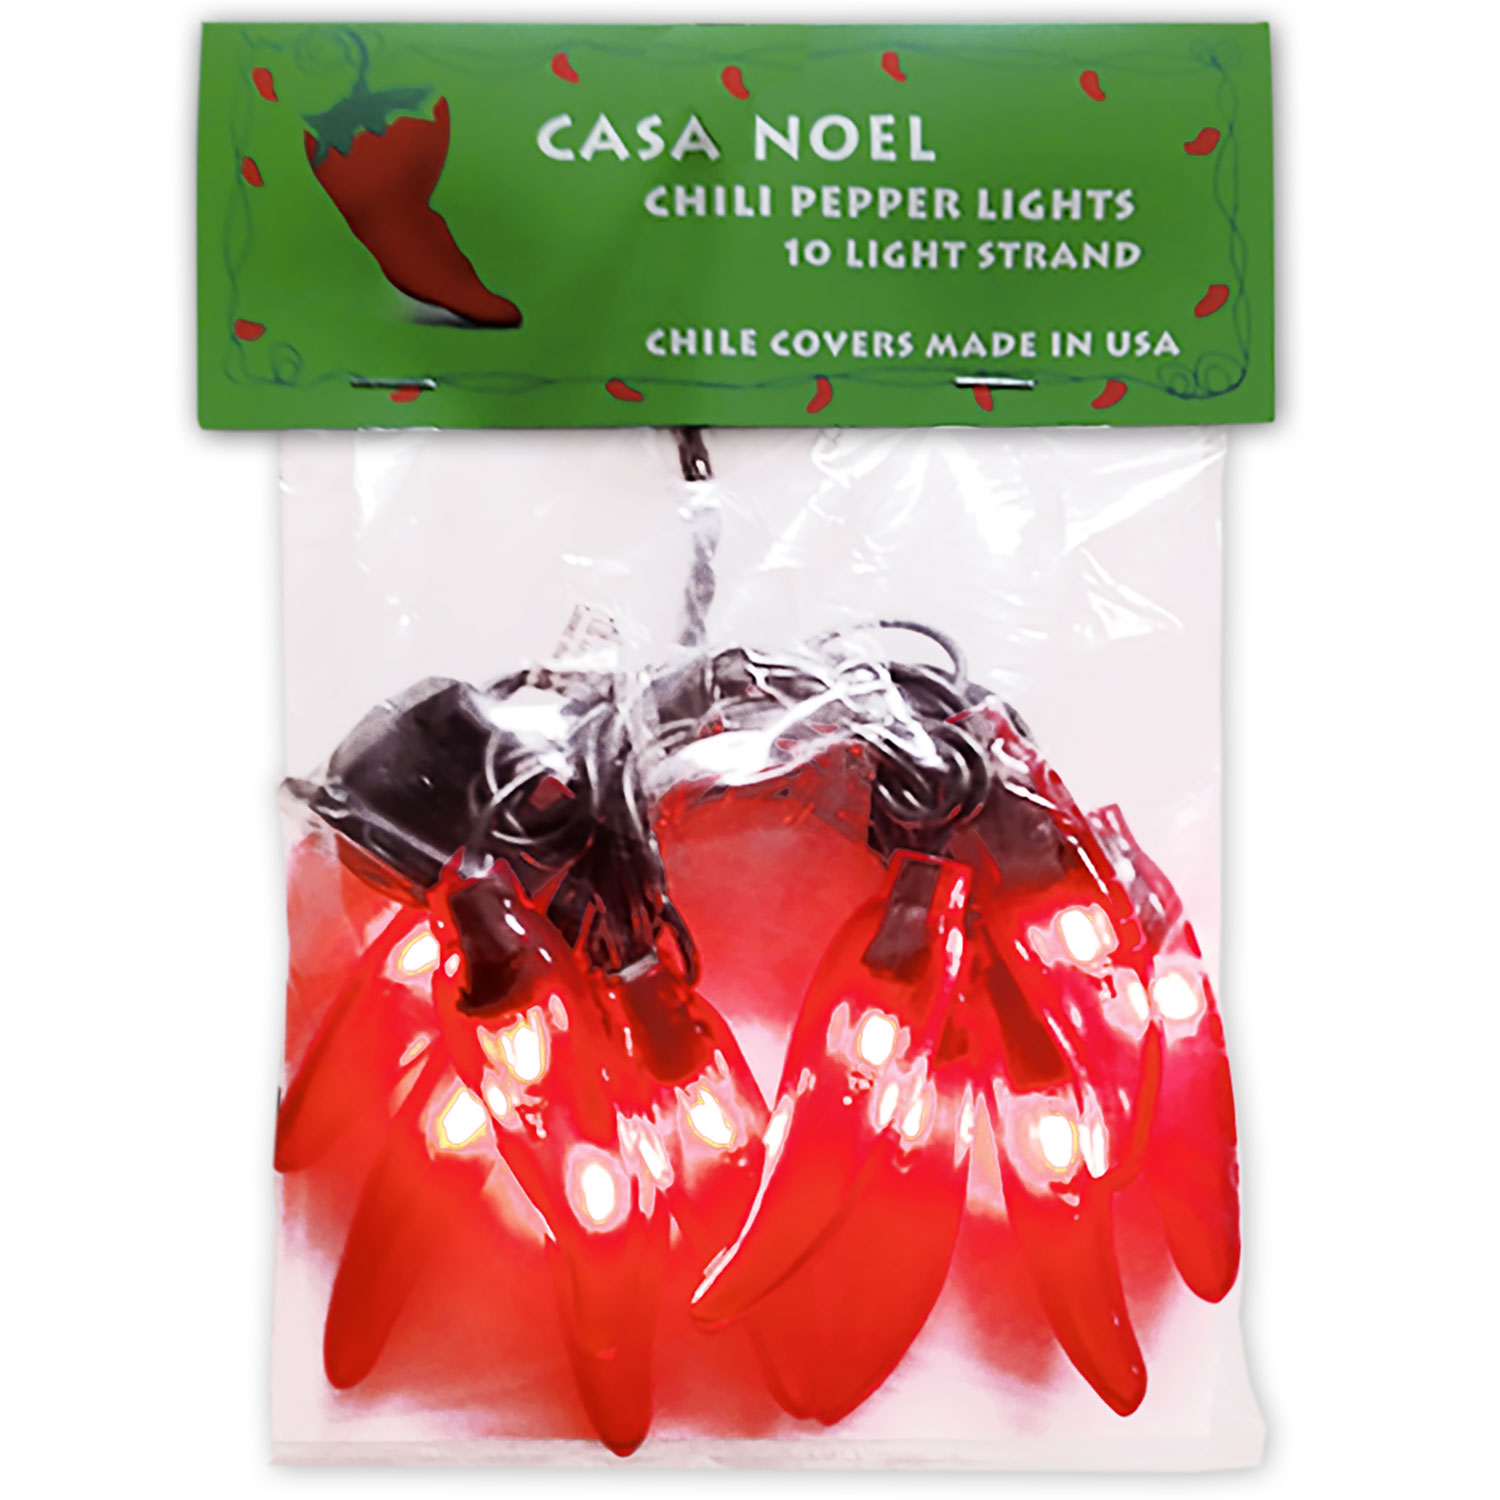 271655 - Casa Noel String of 10 Chili Pepper Lights each 2.5 in Long